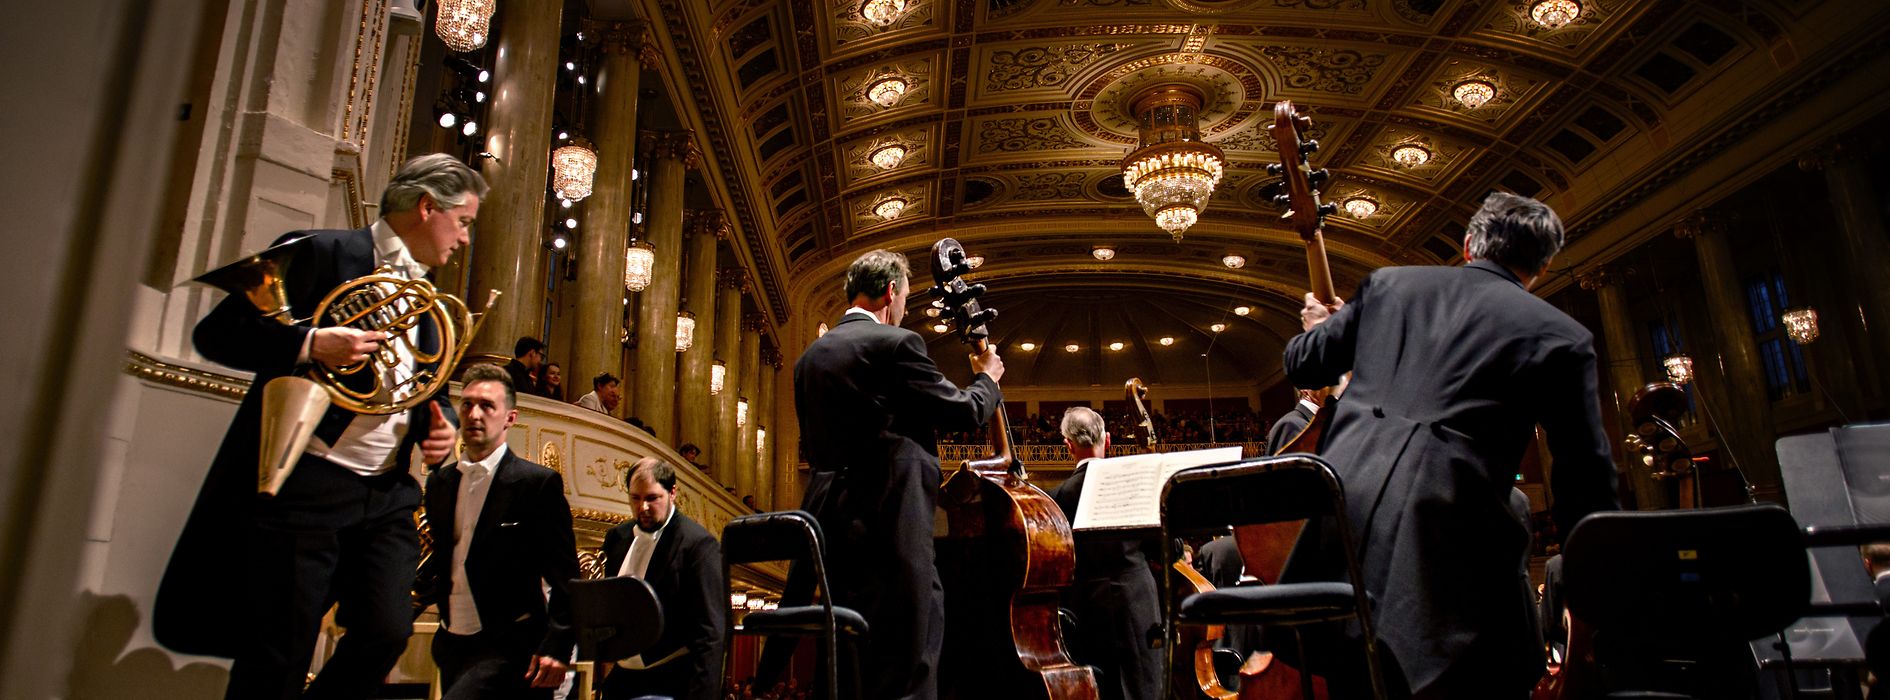 Músicos en la Wiener Konzerthaus